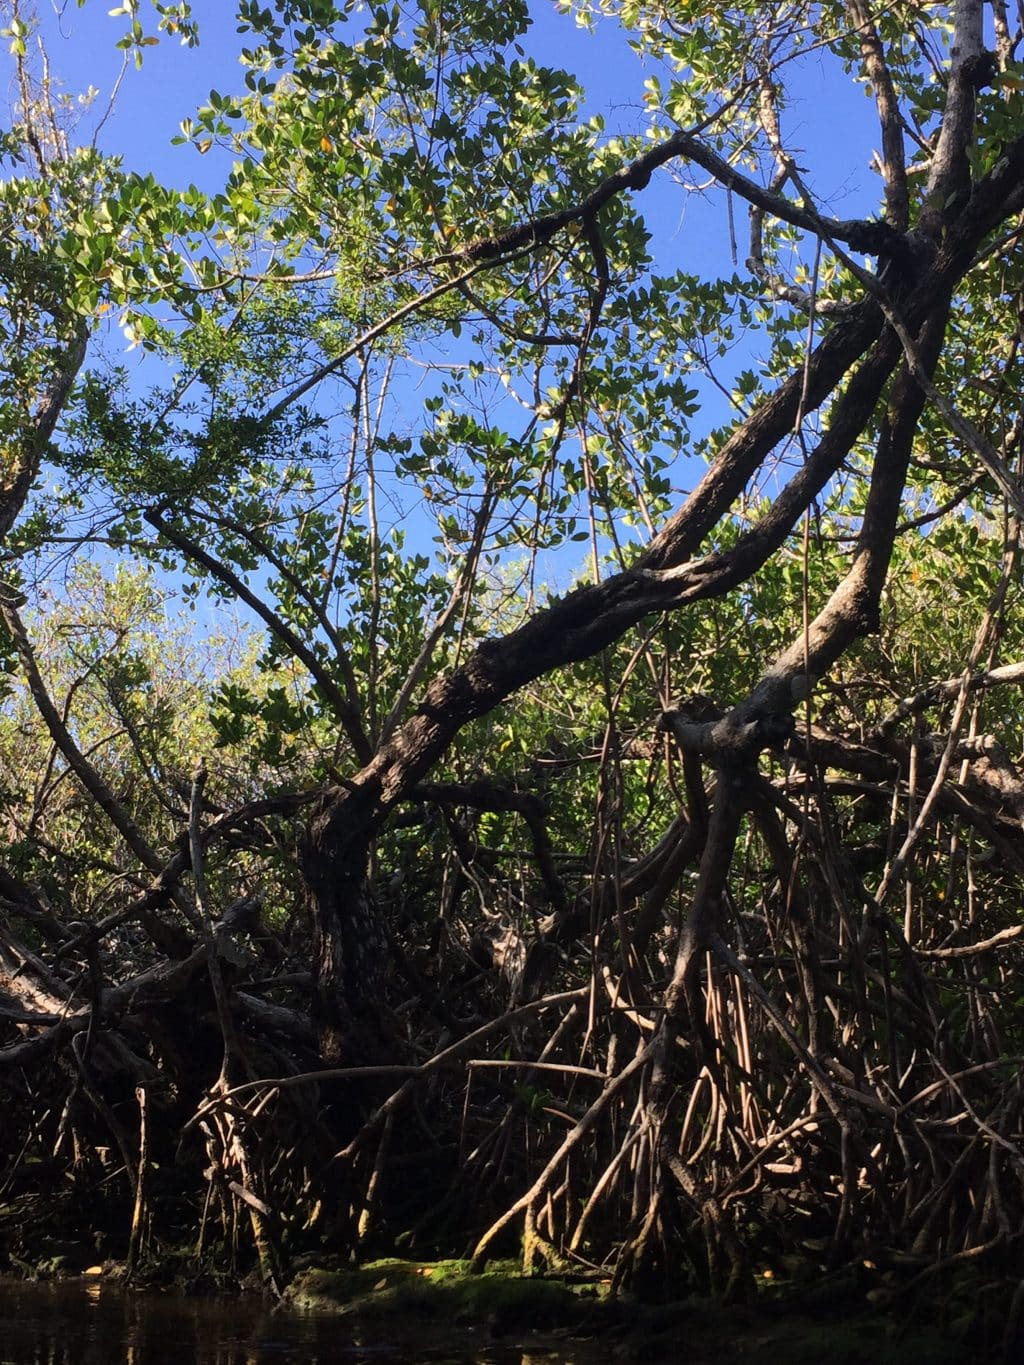 Florida Everglades blue sky and mangroves